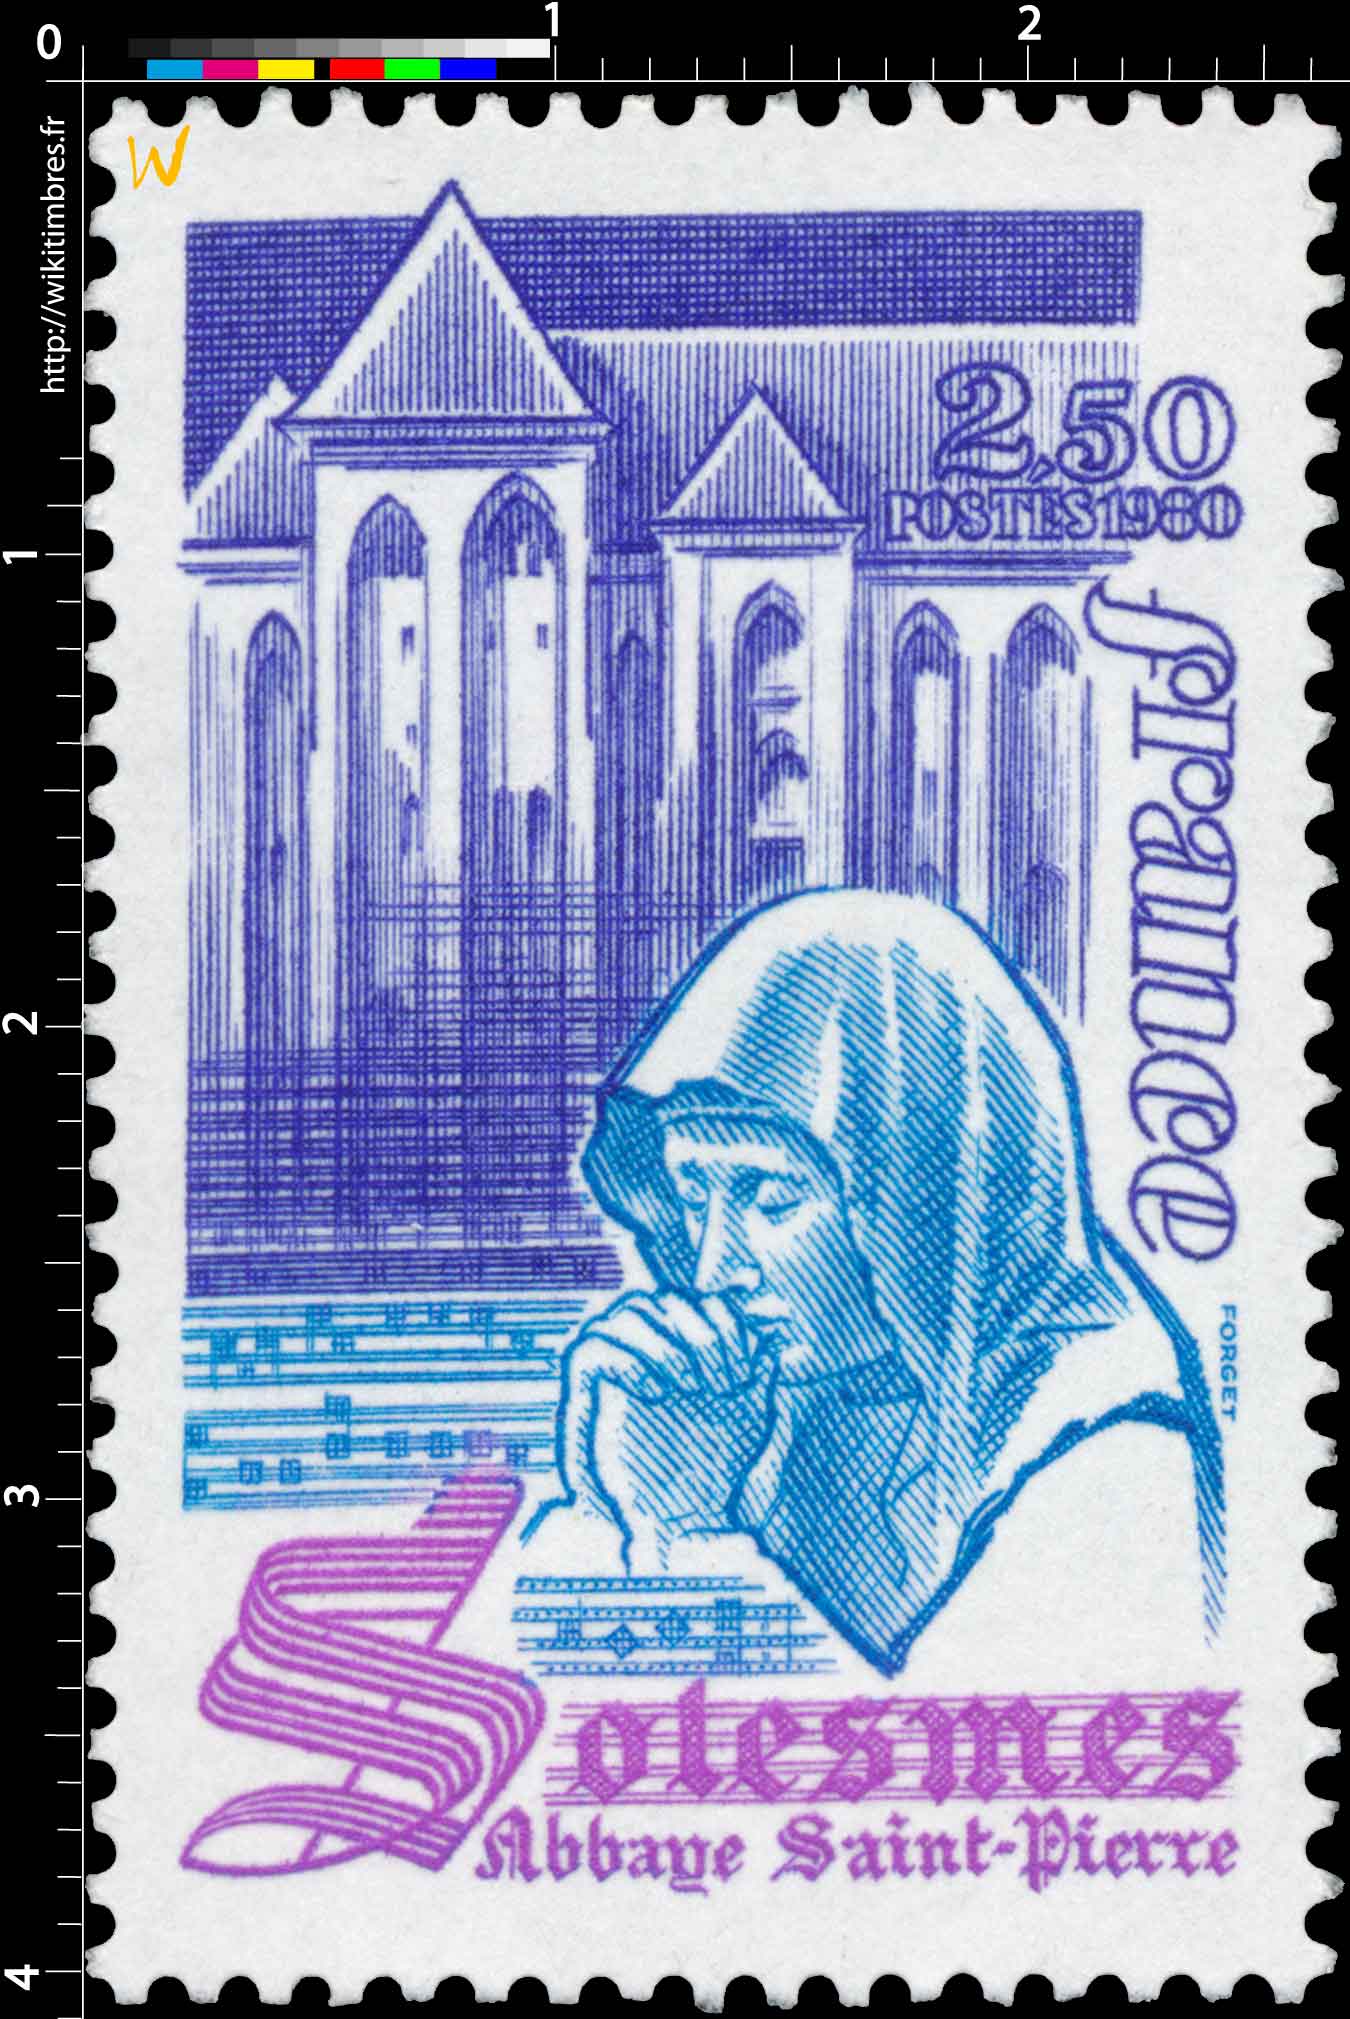 1980 Solesmes abbaye Saint-Pierre